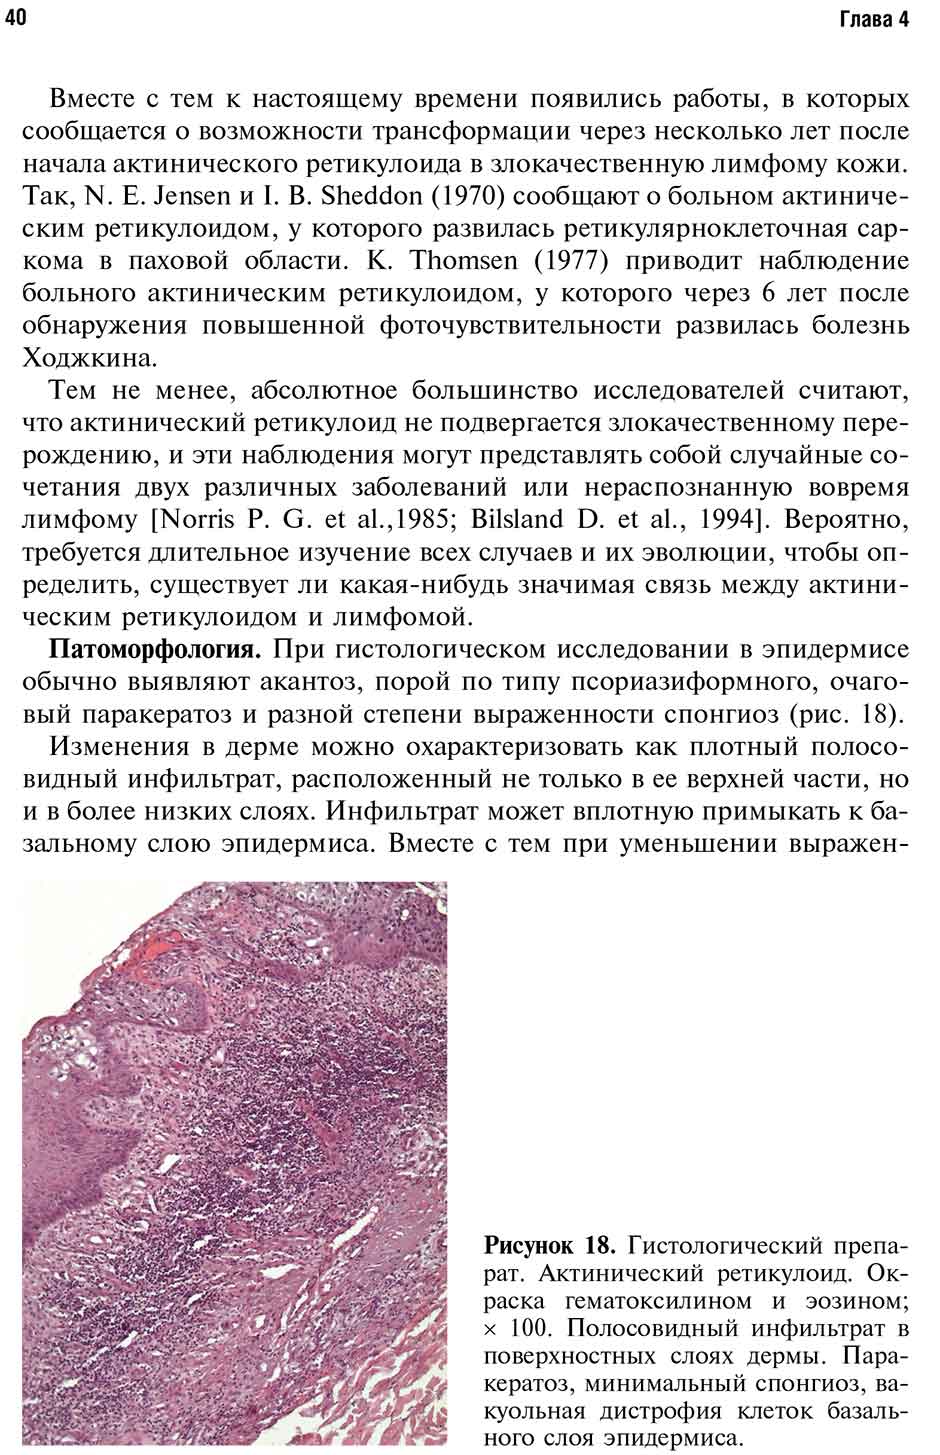 Рисунок 18. Гистологический препарат. Актинический ретикулоид. 